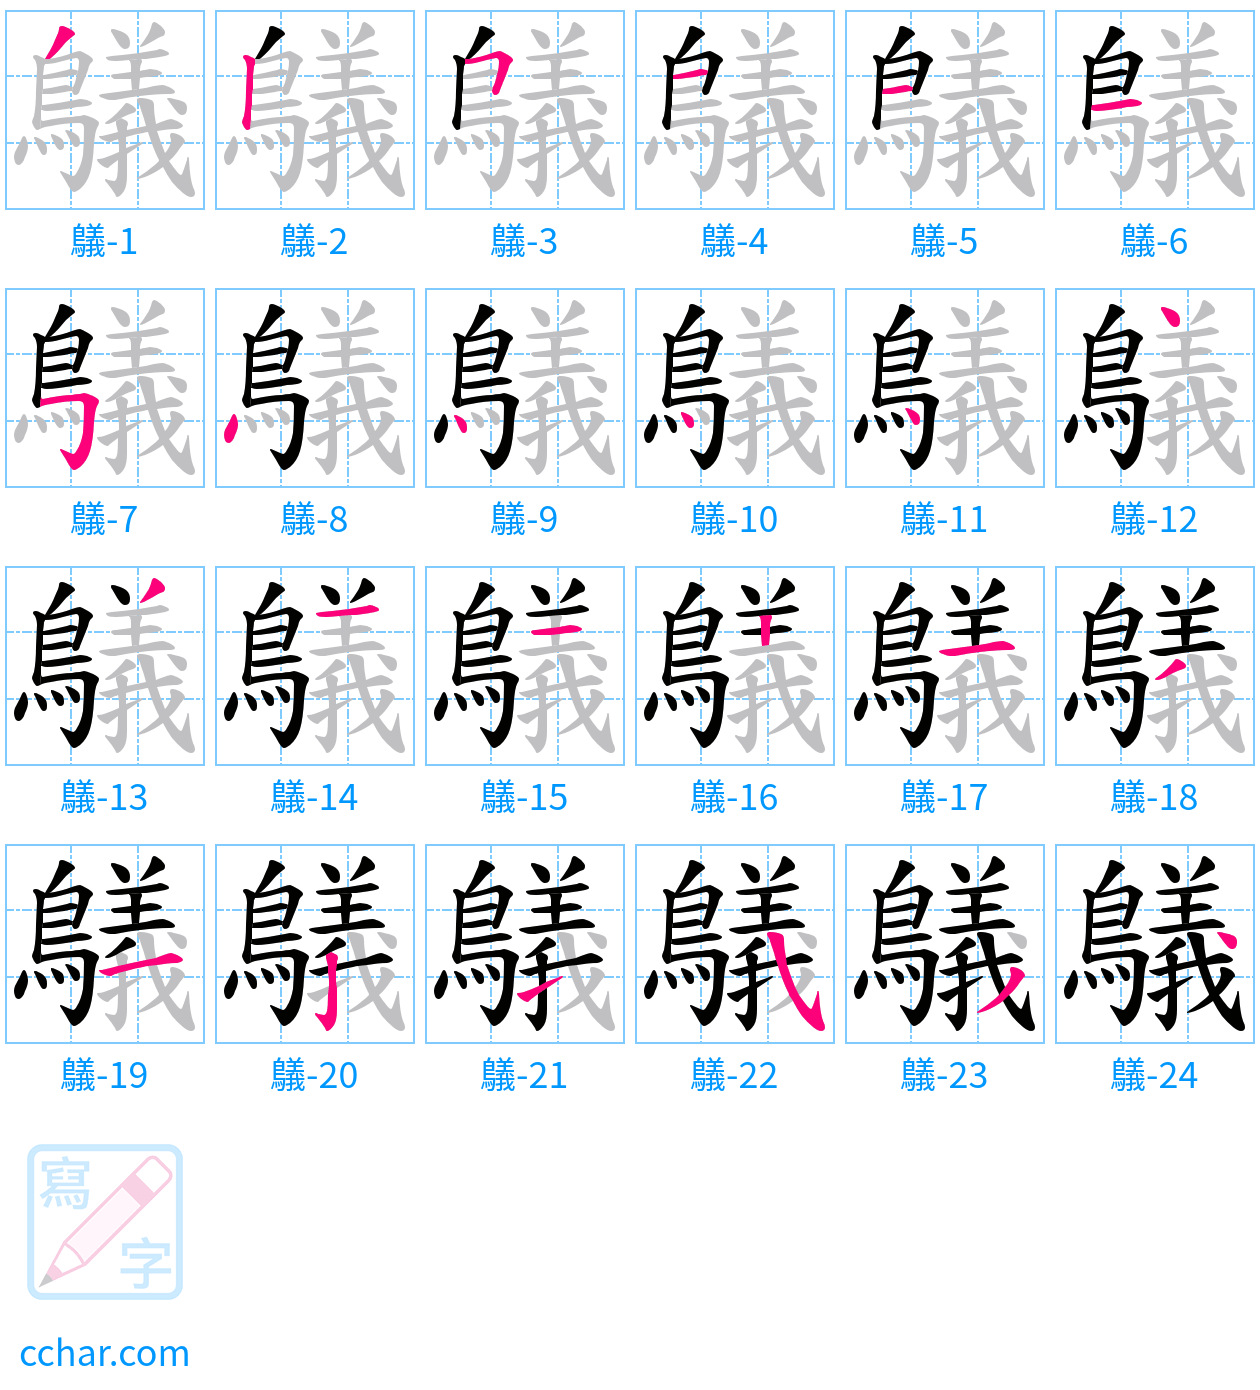 鸃 stroke order step-by-step diagram